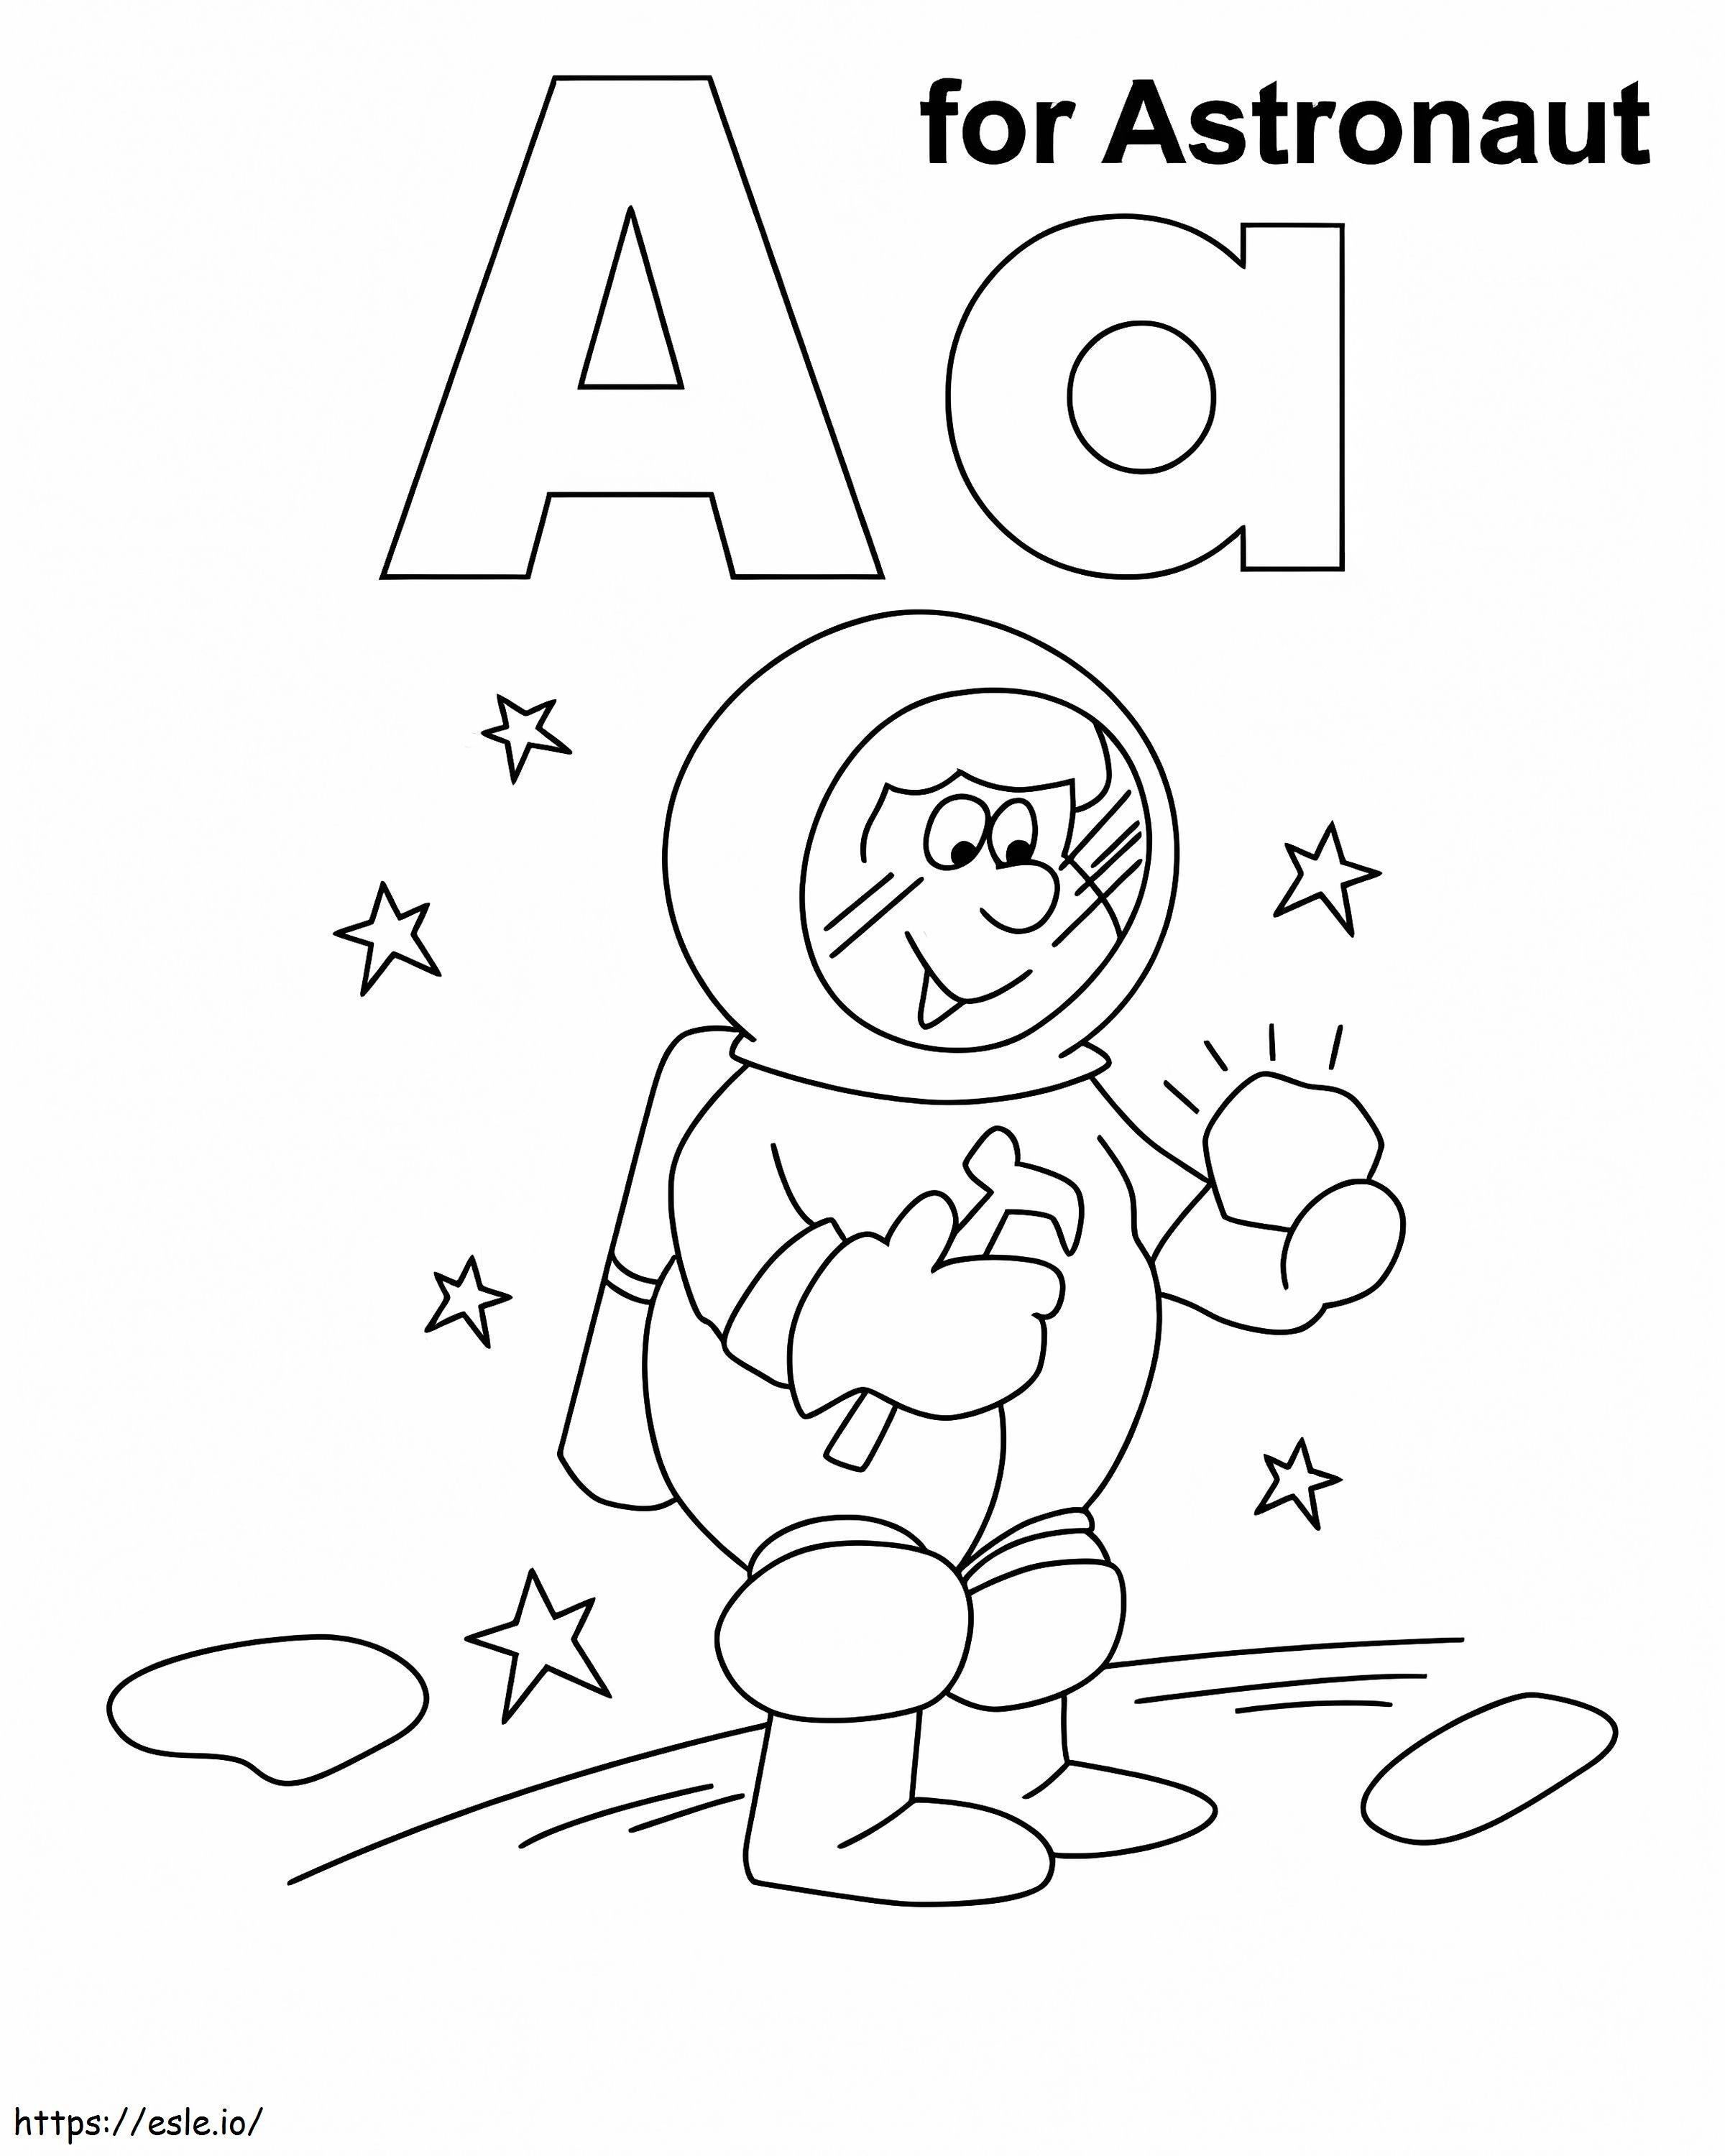 Letra A para astronauta para colorir